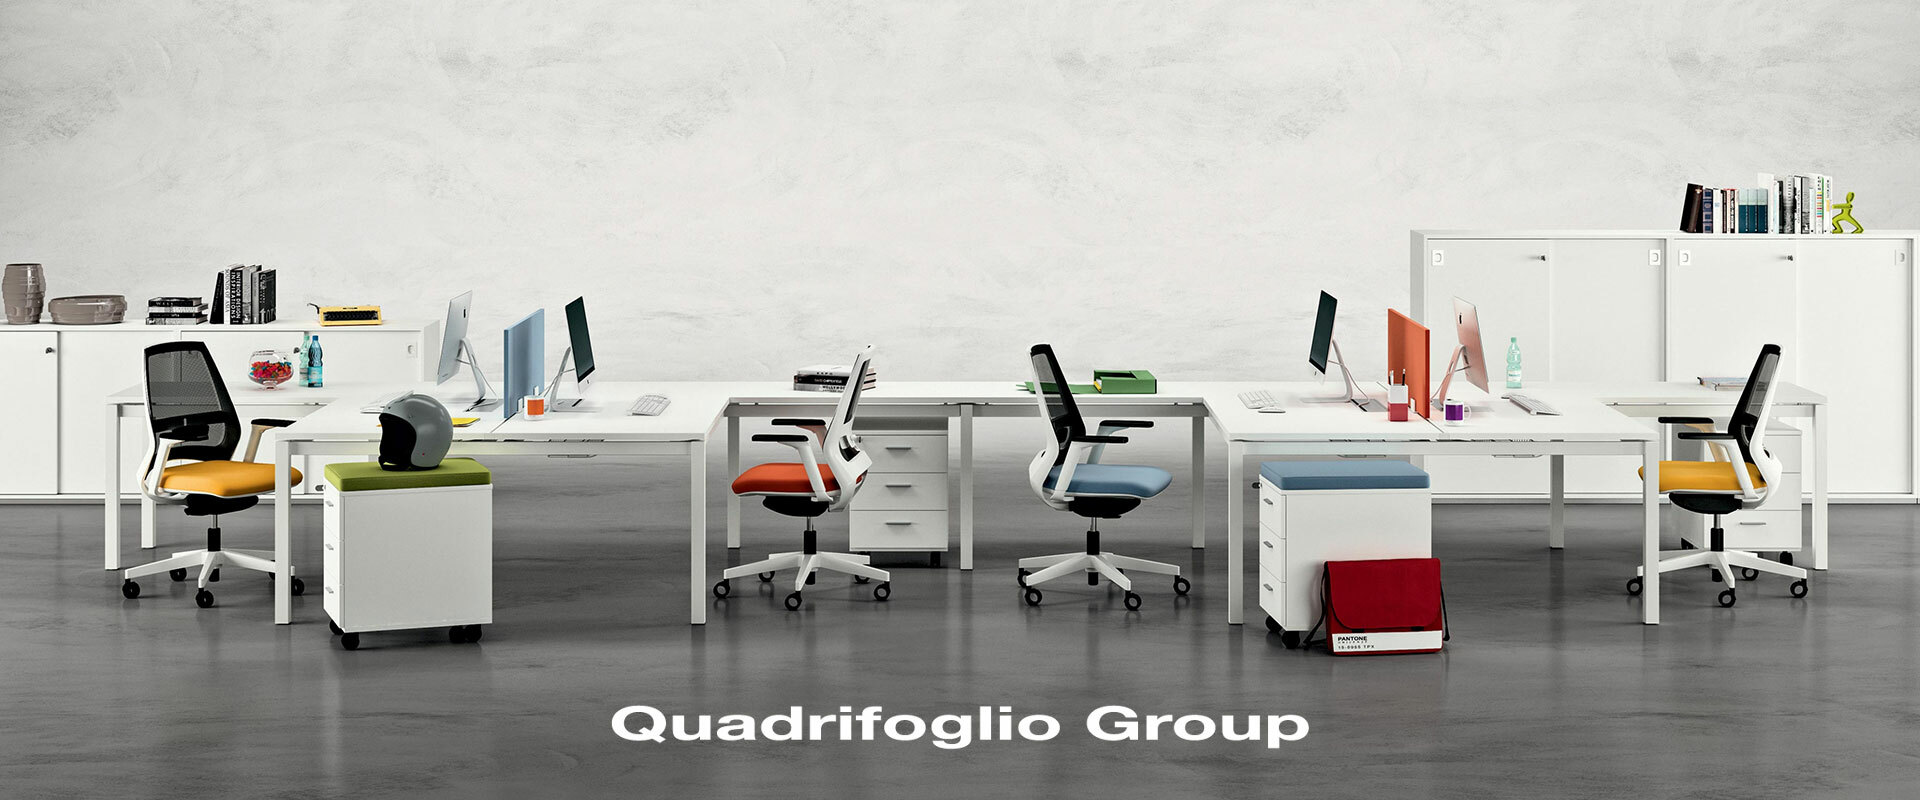 Quadrifoglio Group